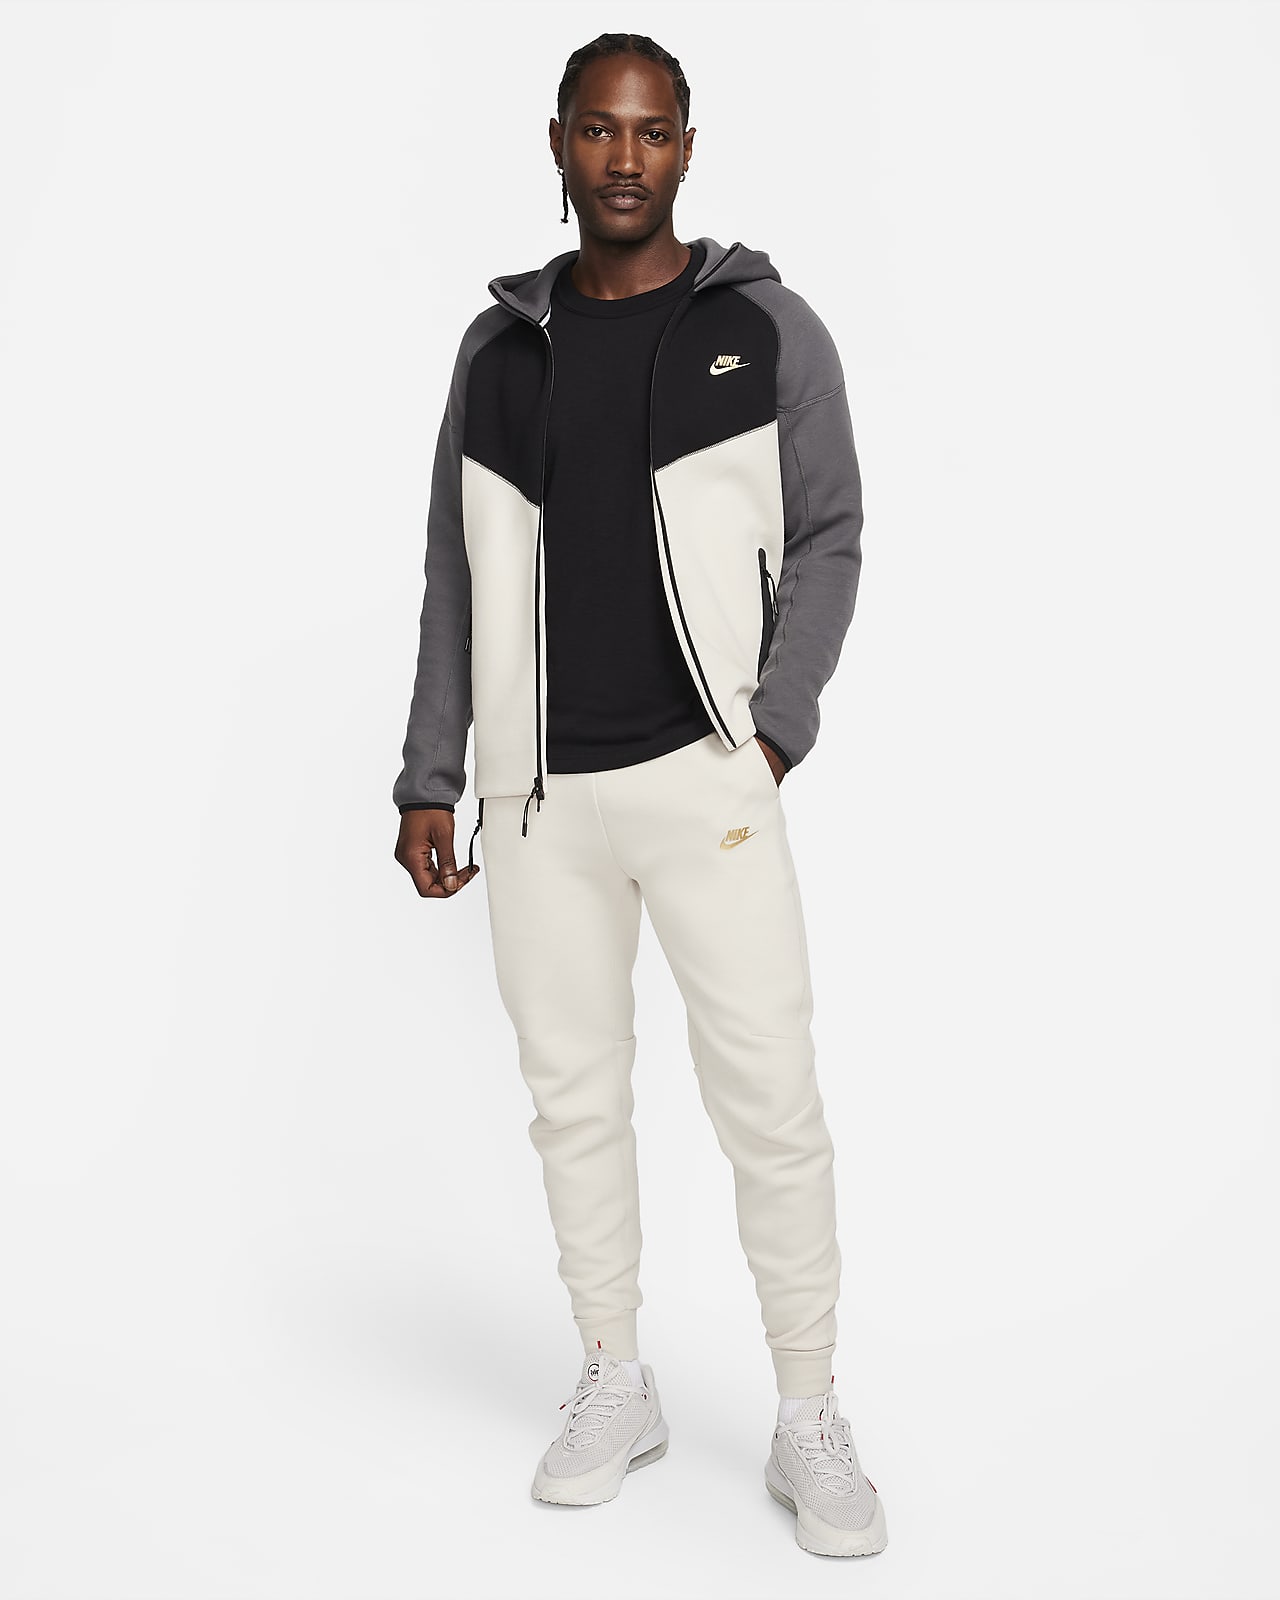 Sweatpants Nike Sportswear Tech Fleece fb8330-110